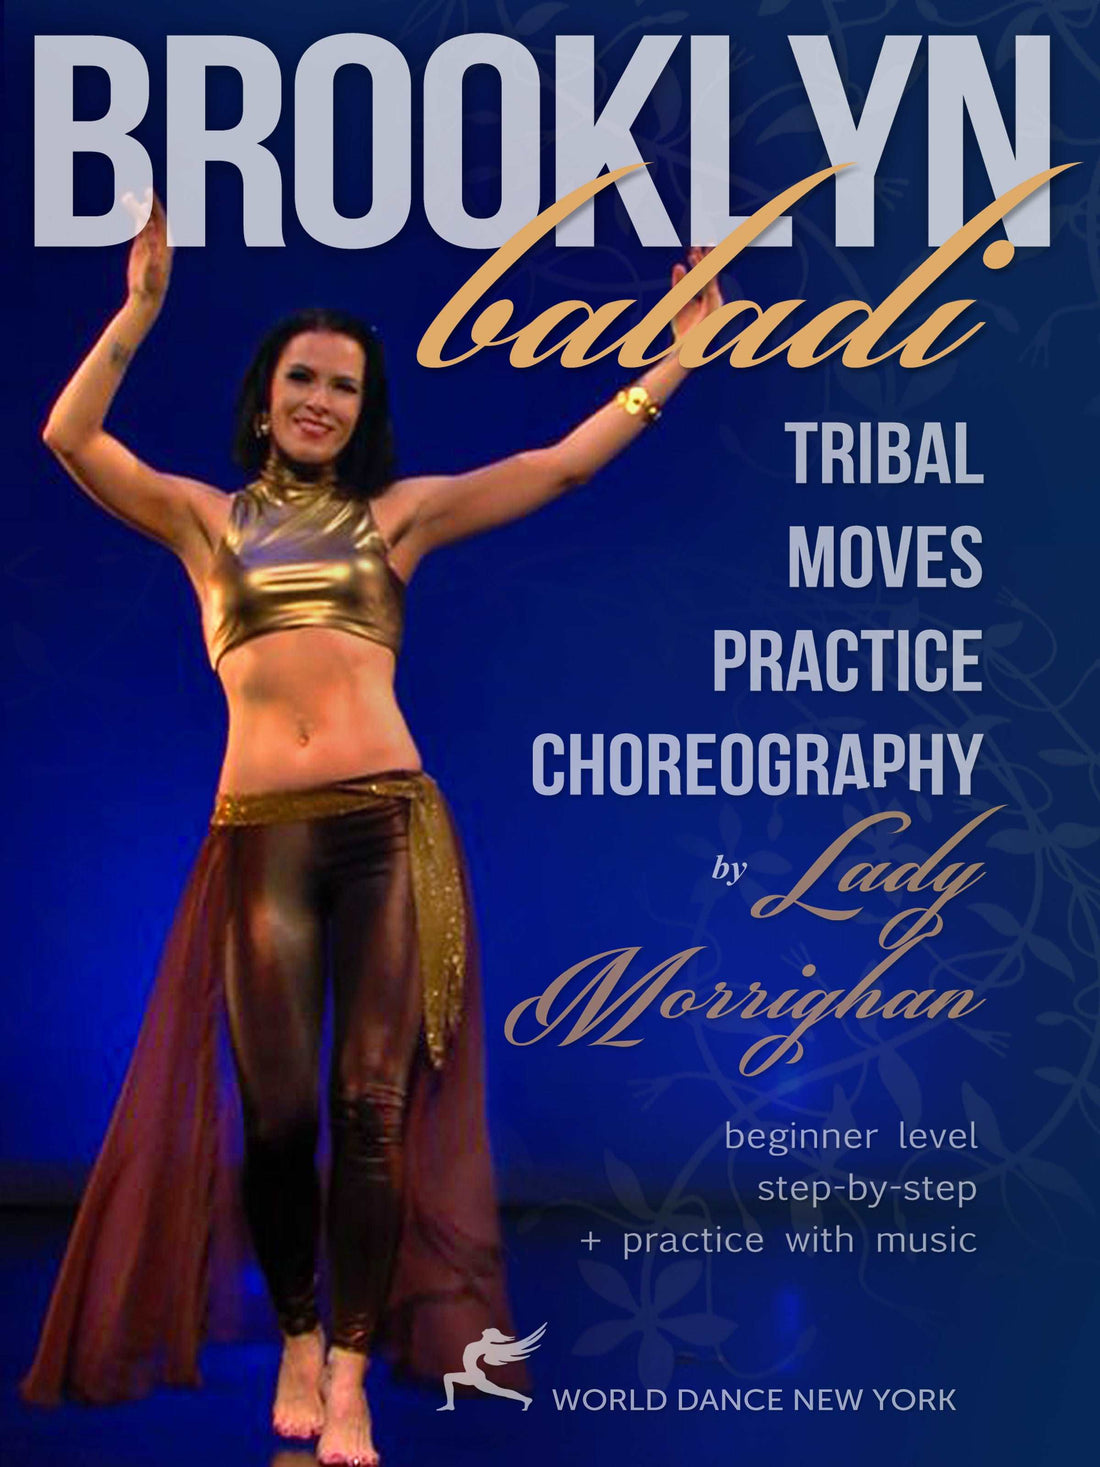 Brooklyn Baladi: A Tribal Belly Dance Choreography by Lady M. - World Dance New York